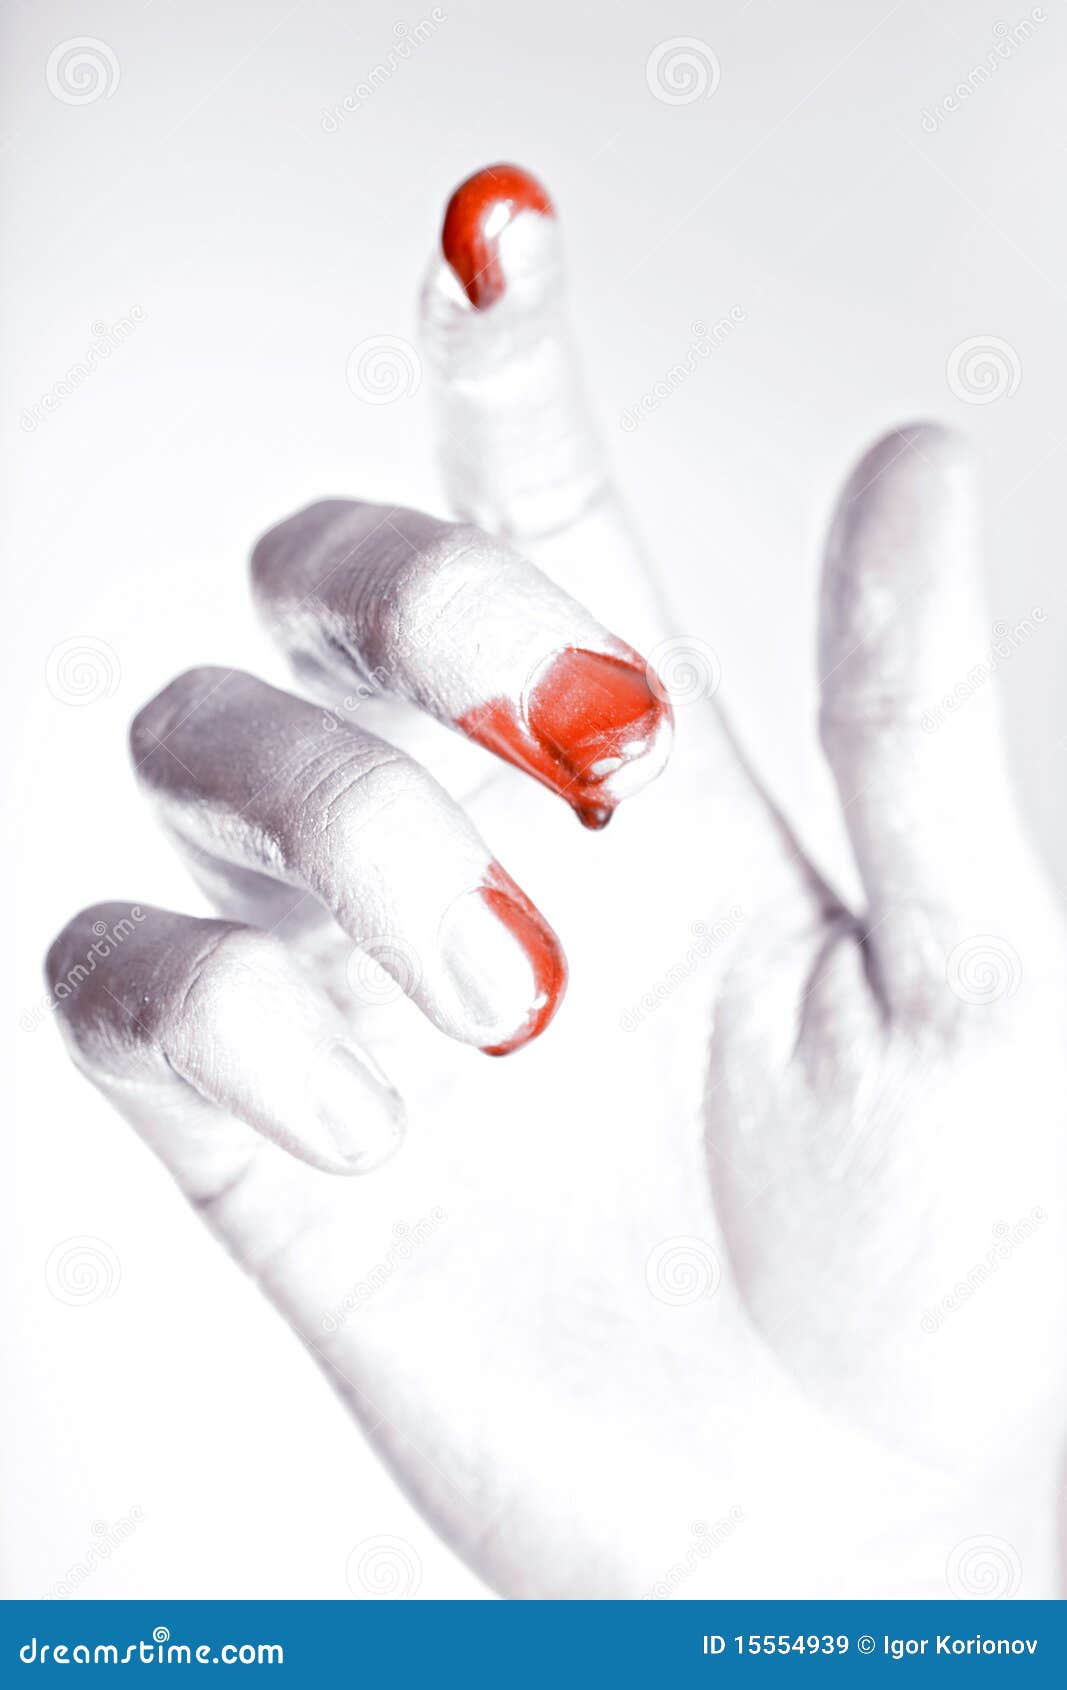 Кровь из пальчика